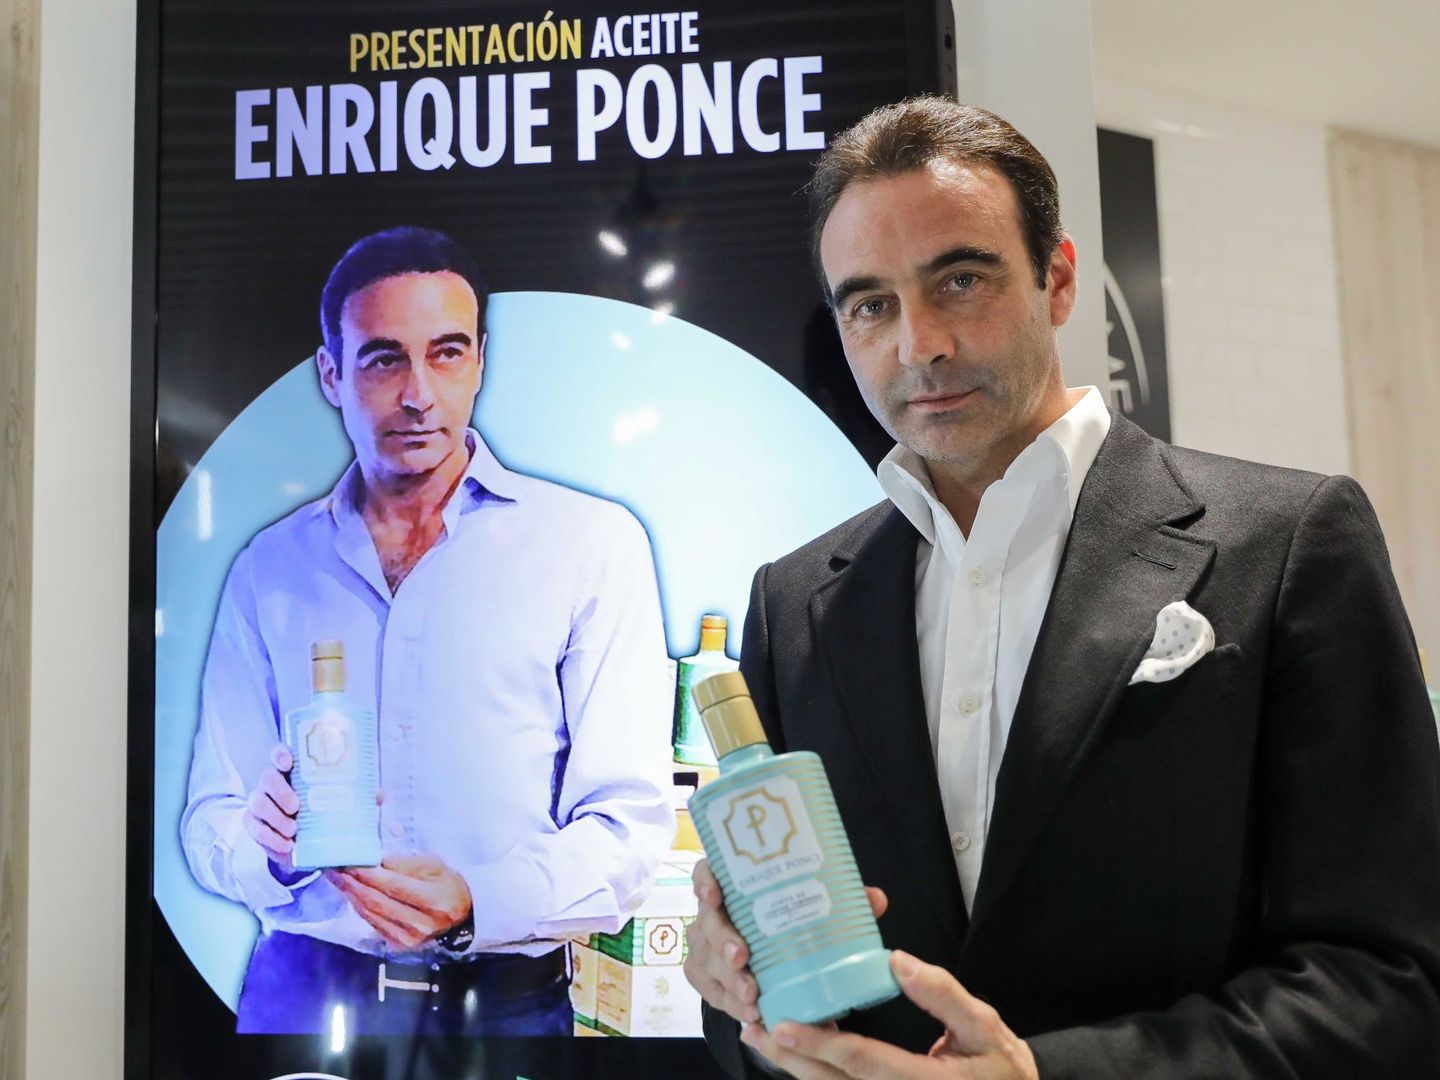 Enrique Ponce durante una presentación en Valencia del aceite de oliva virgen extra que lleva su nombre. (EFE)